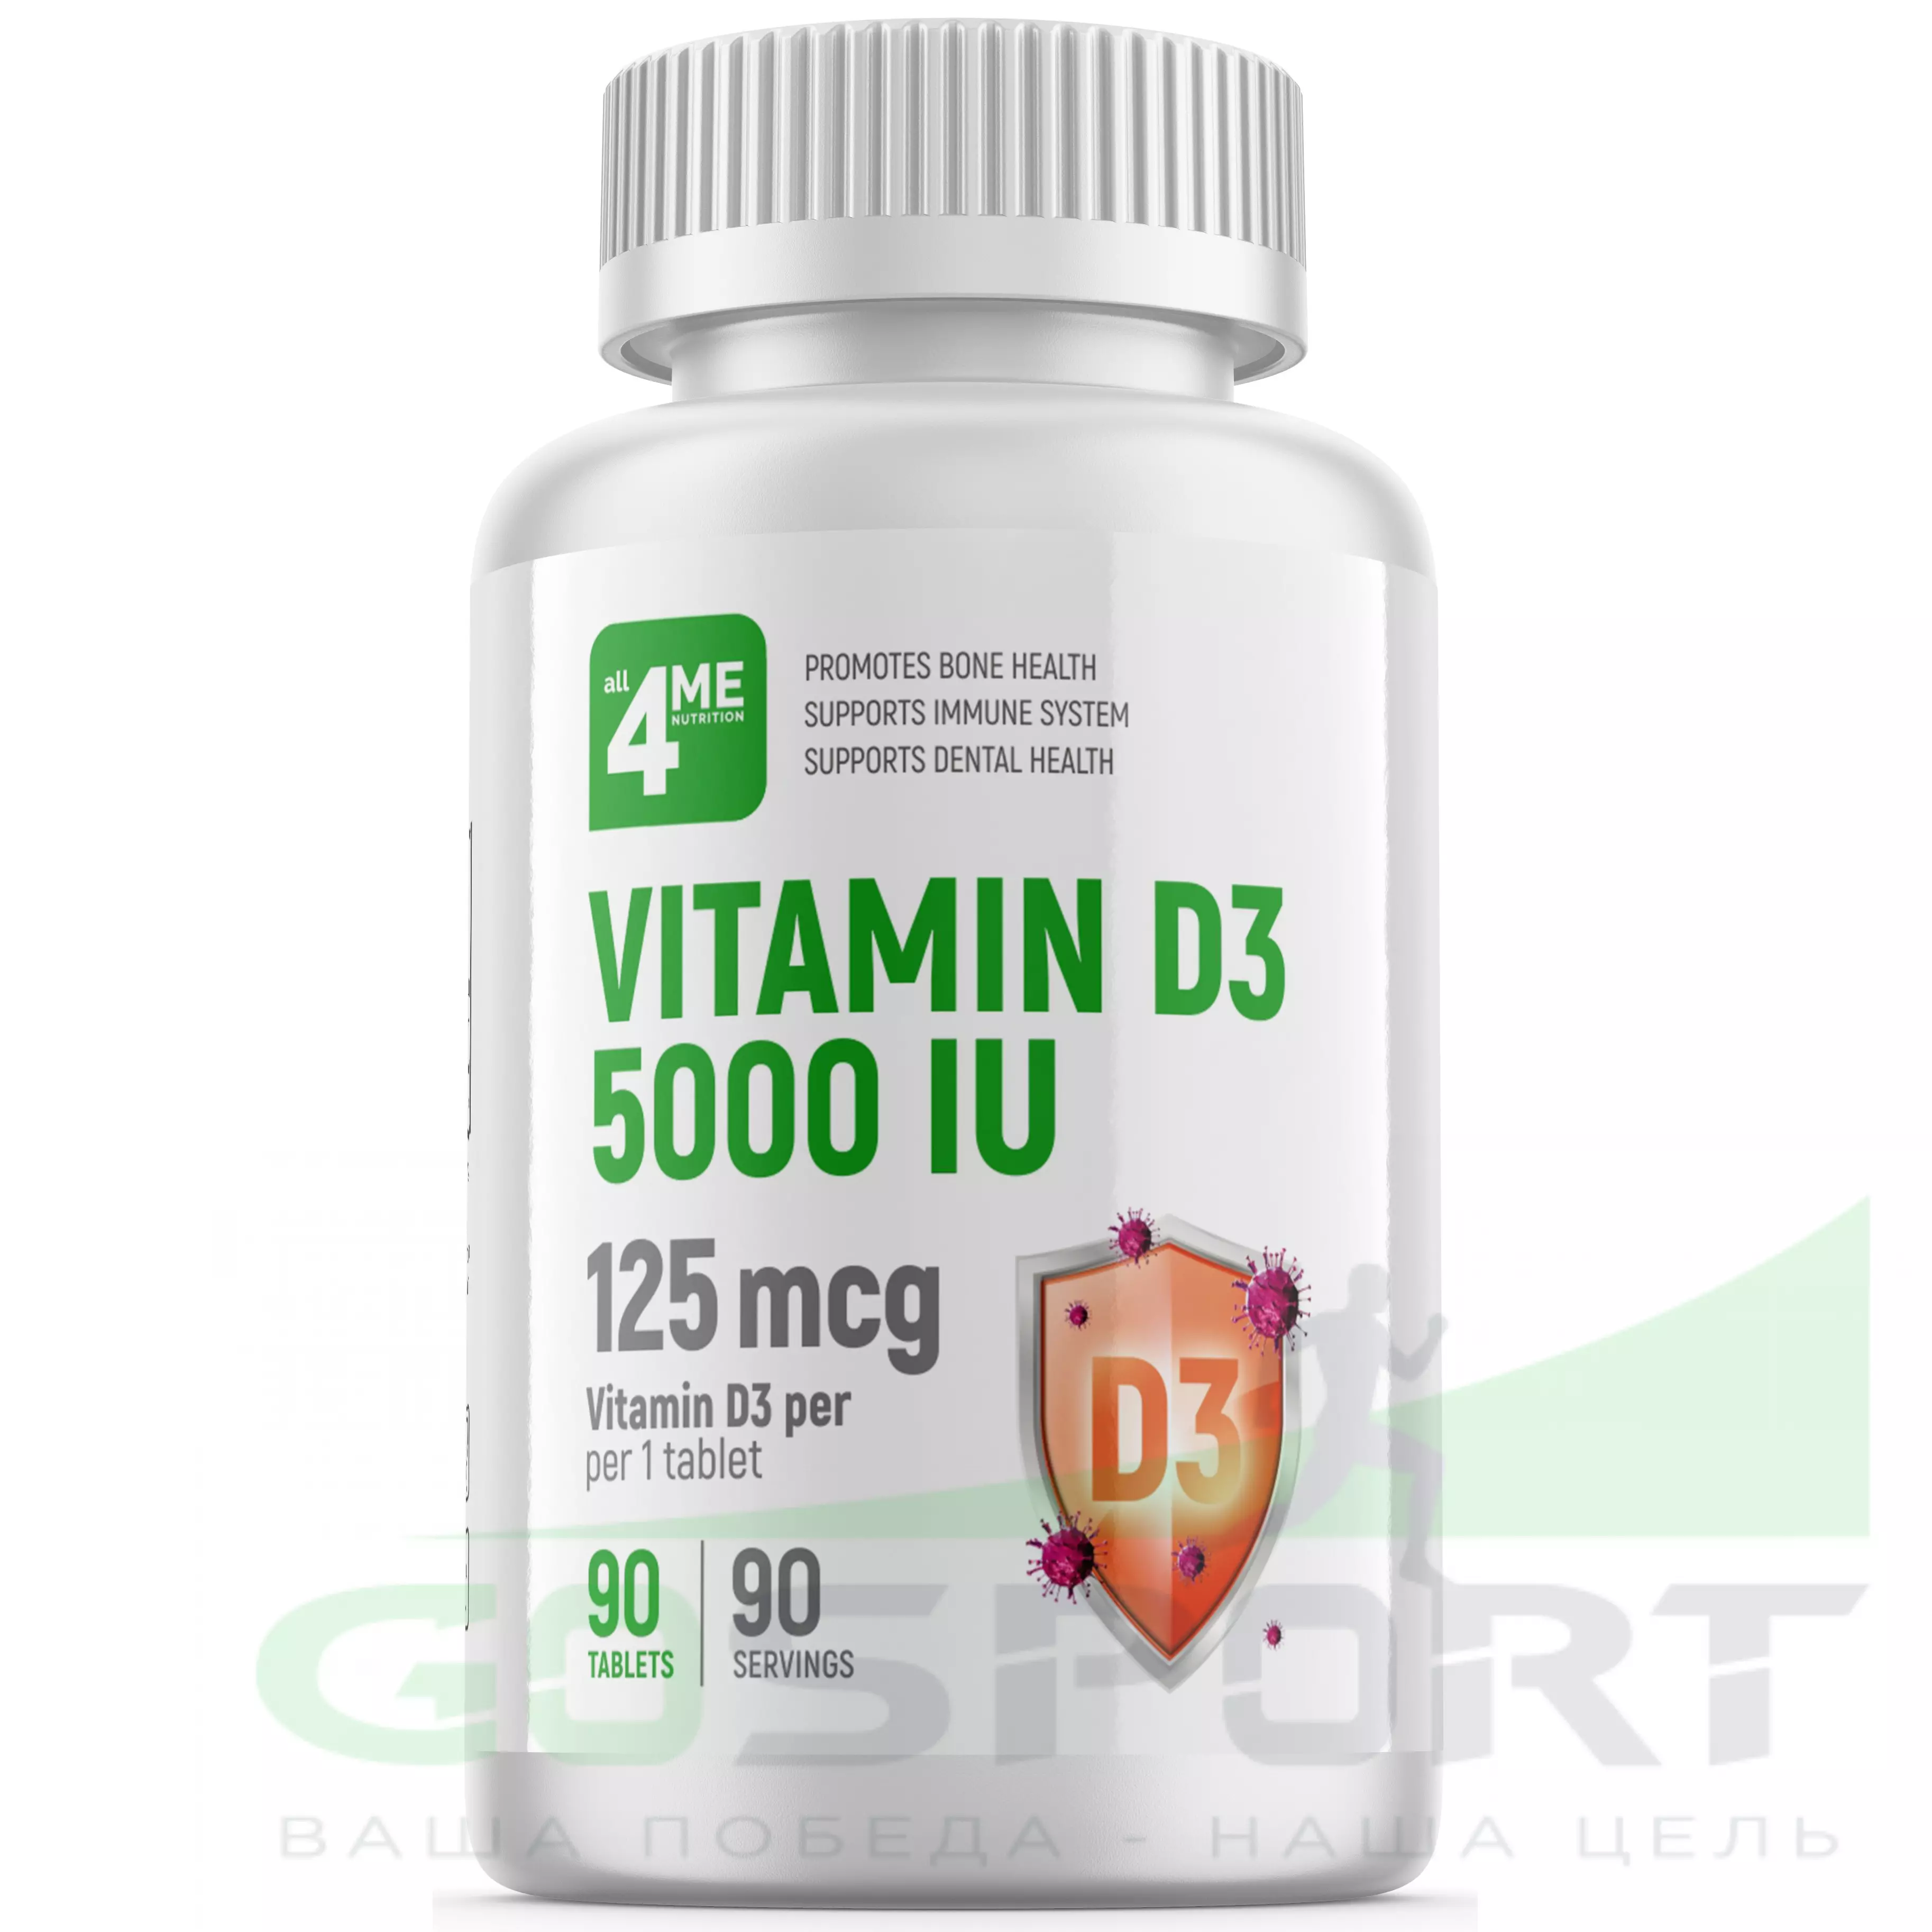 Официальный поставщик Купить Vitamin D3 5000 IU 4Me Nutrition 90 таблеток